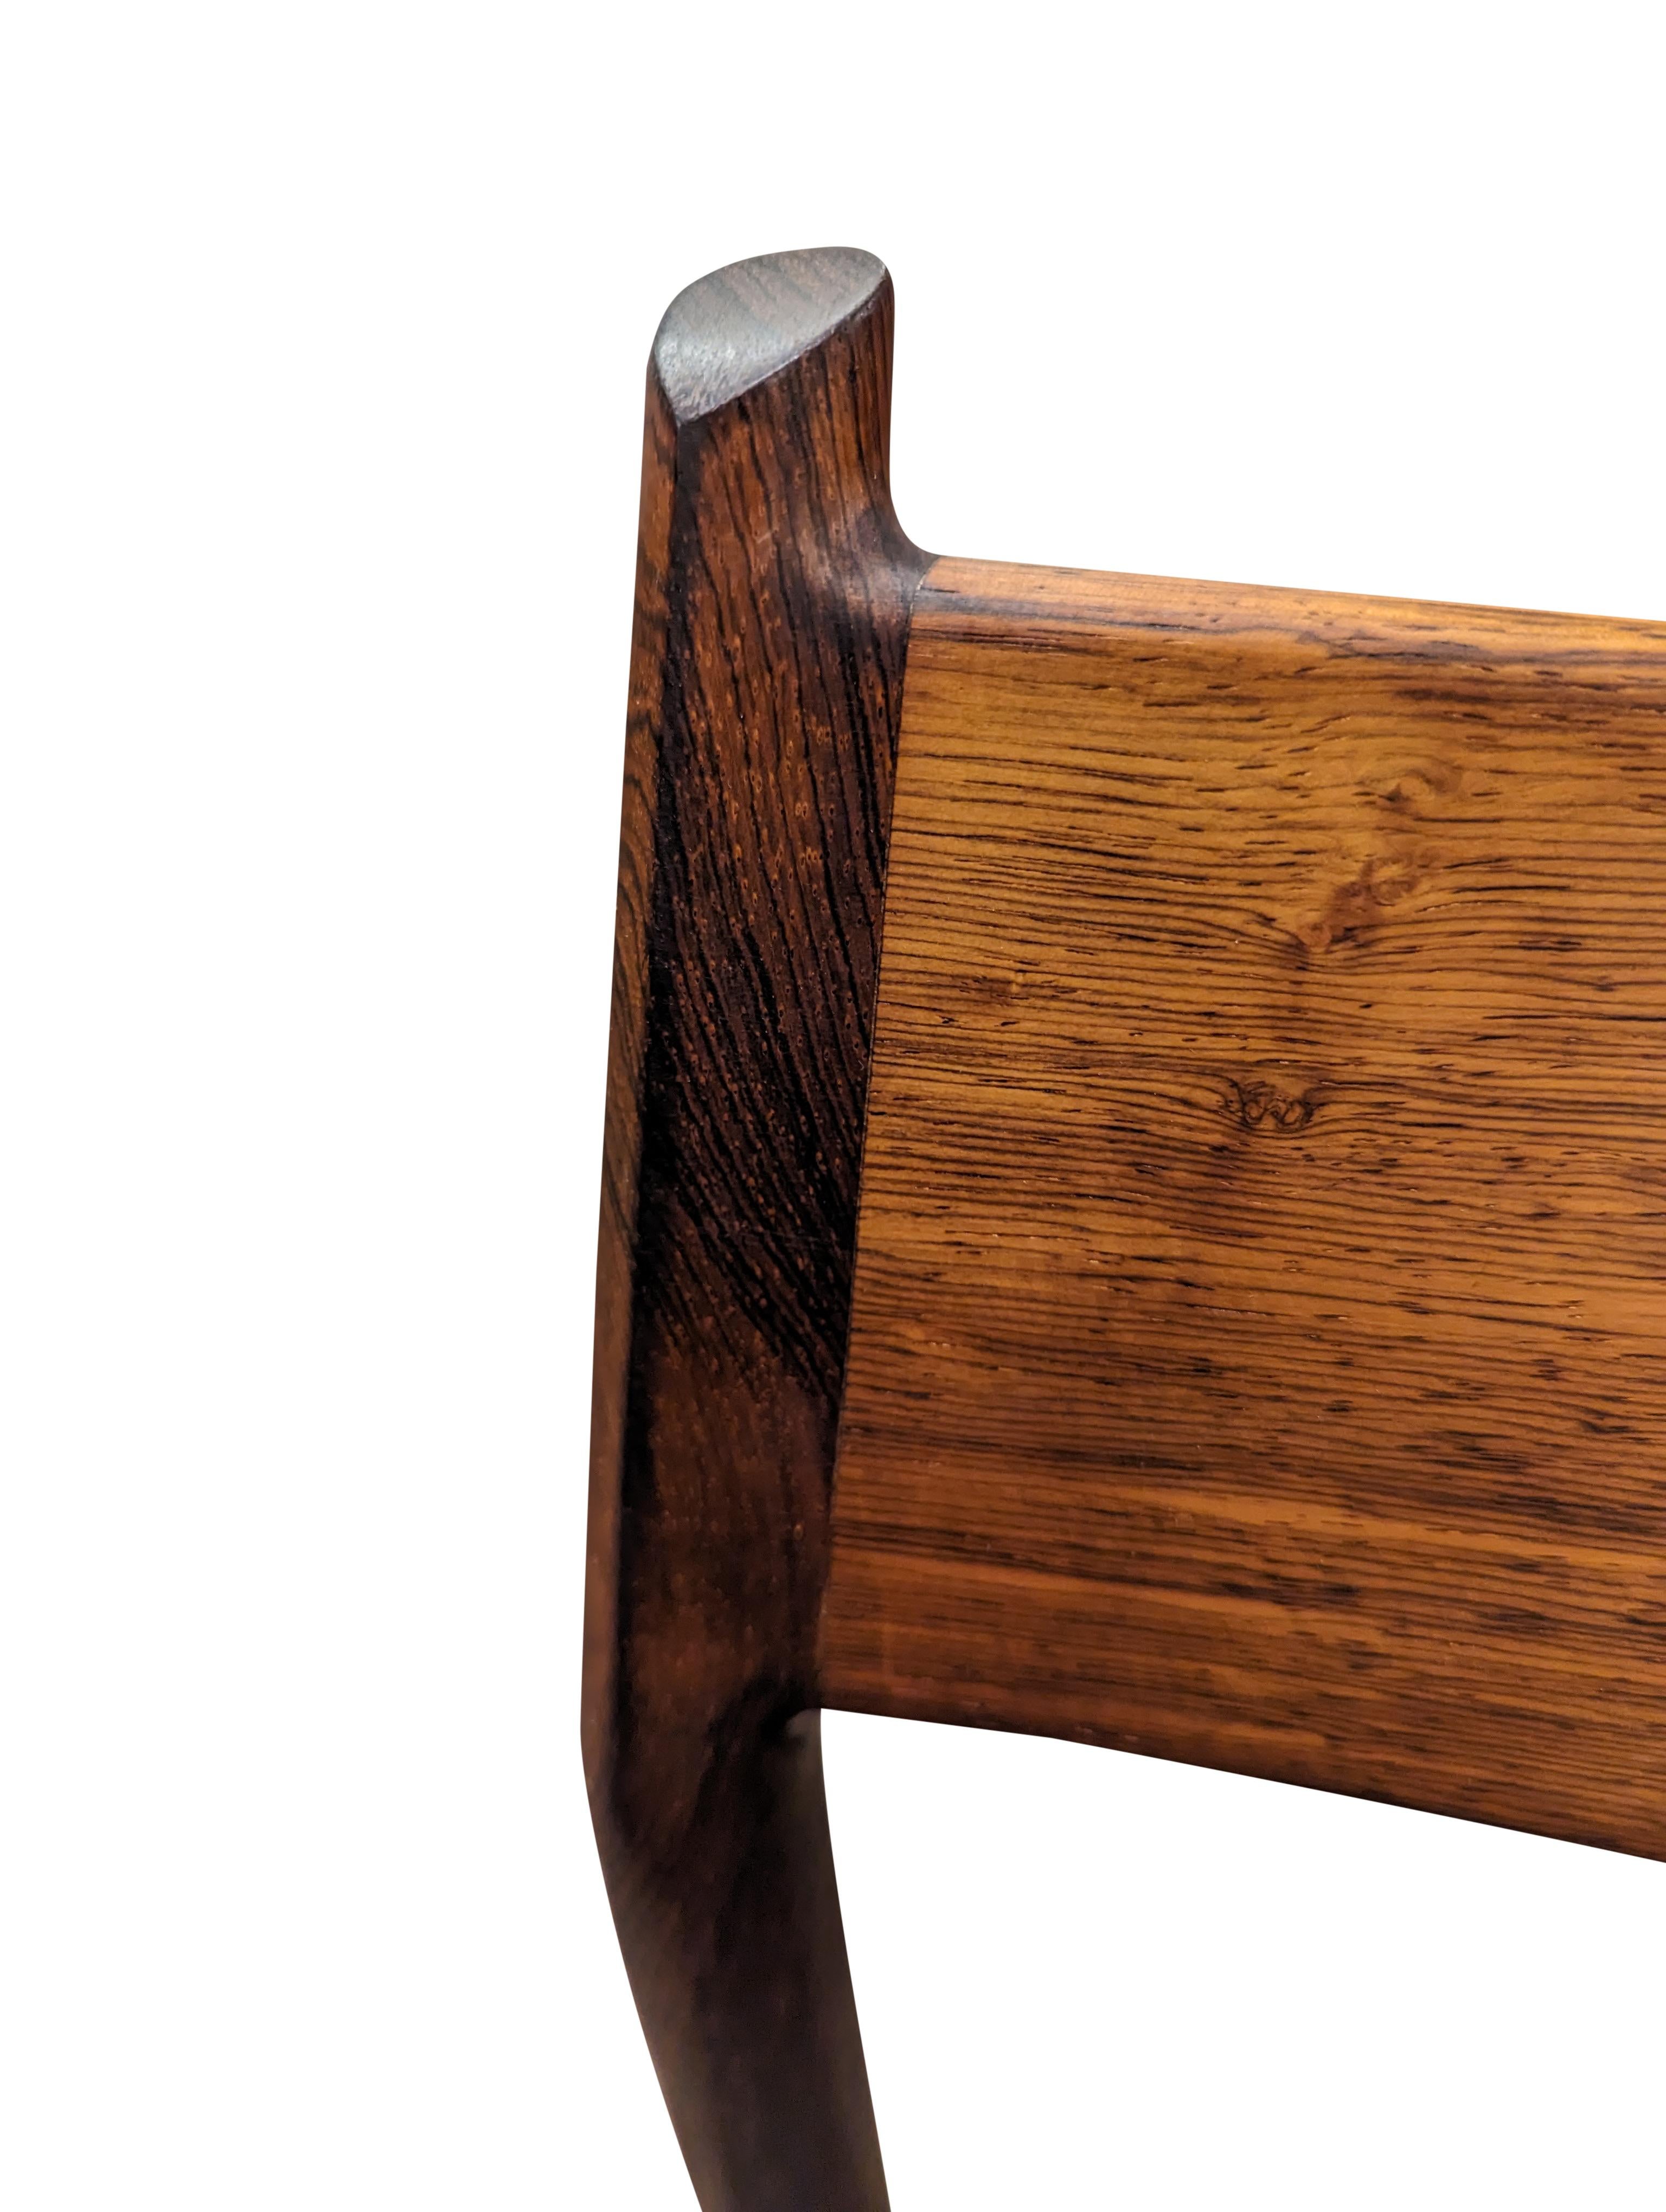 Vintage Danish Arne Vodder for Sibast Mobler Rosewood Dining Chair - 082316 4